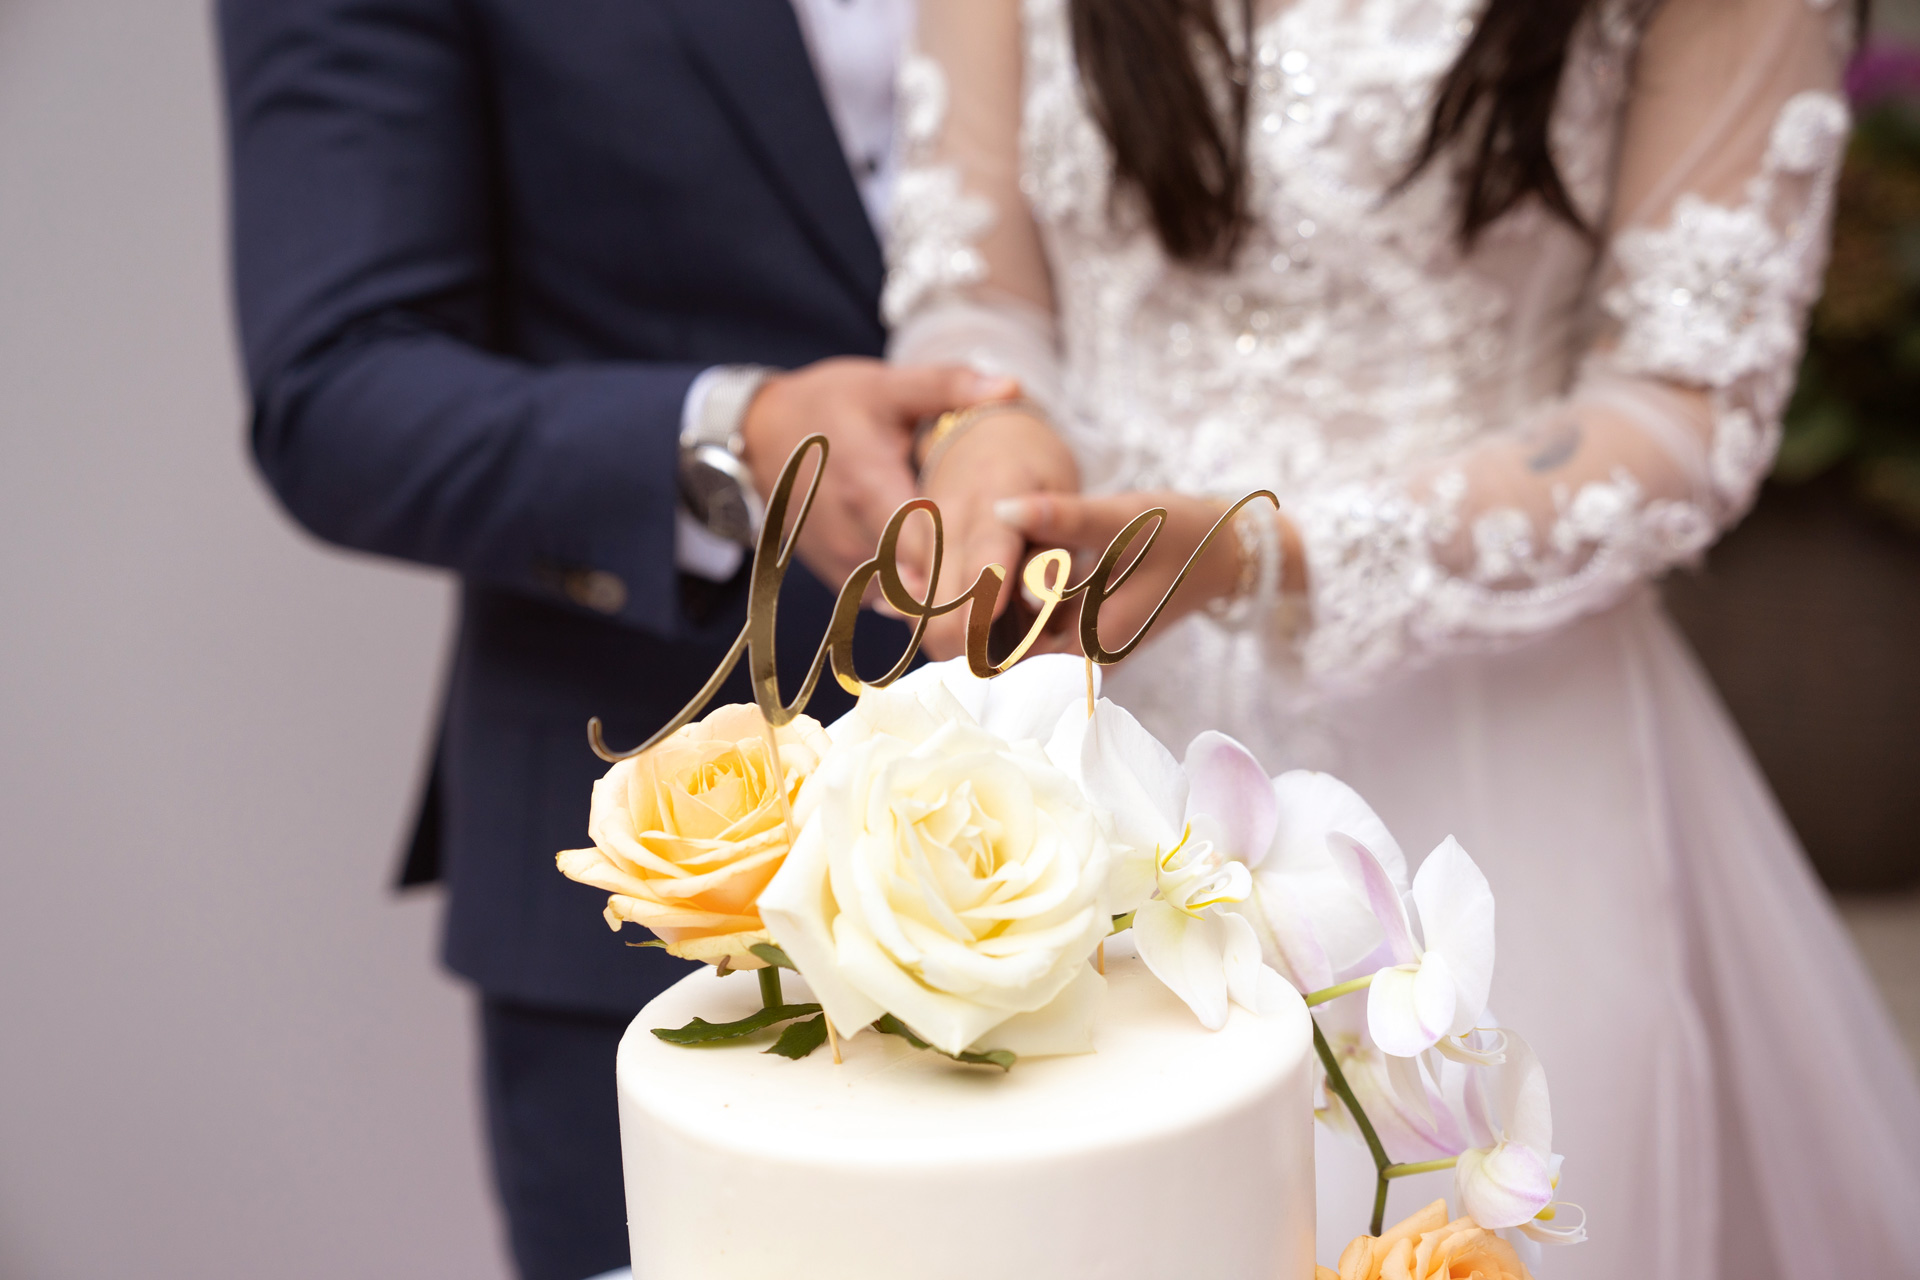 Il Cake topper per la torta nuziale - Fiori d'arancio Wedding